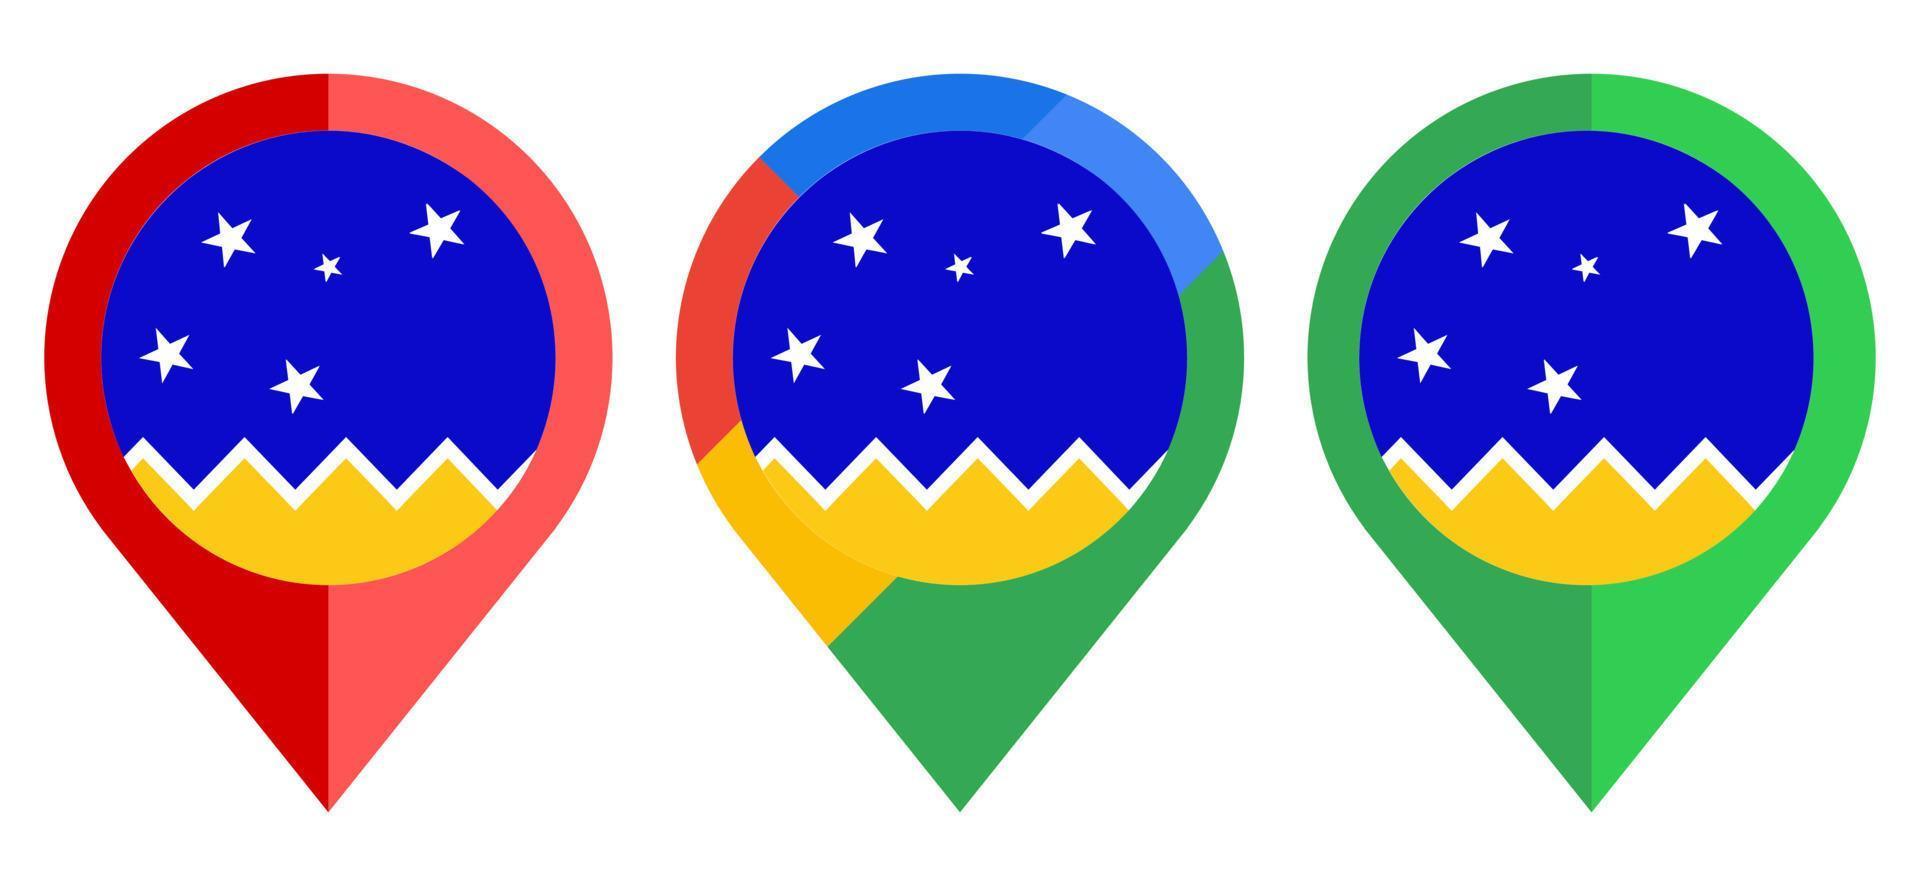 Flaches Kartenmarkierungssymbol mit chilenischer Antarktis-Territoriumsflagge isoliert auf weißem Hintergrund vektor